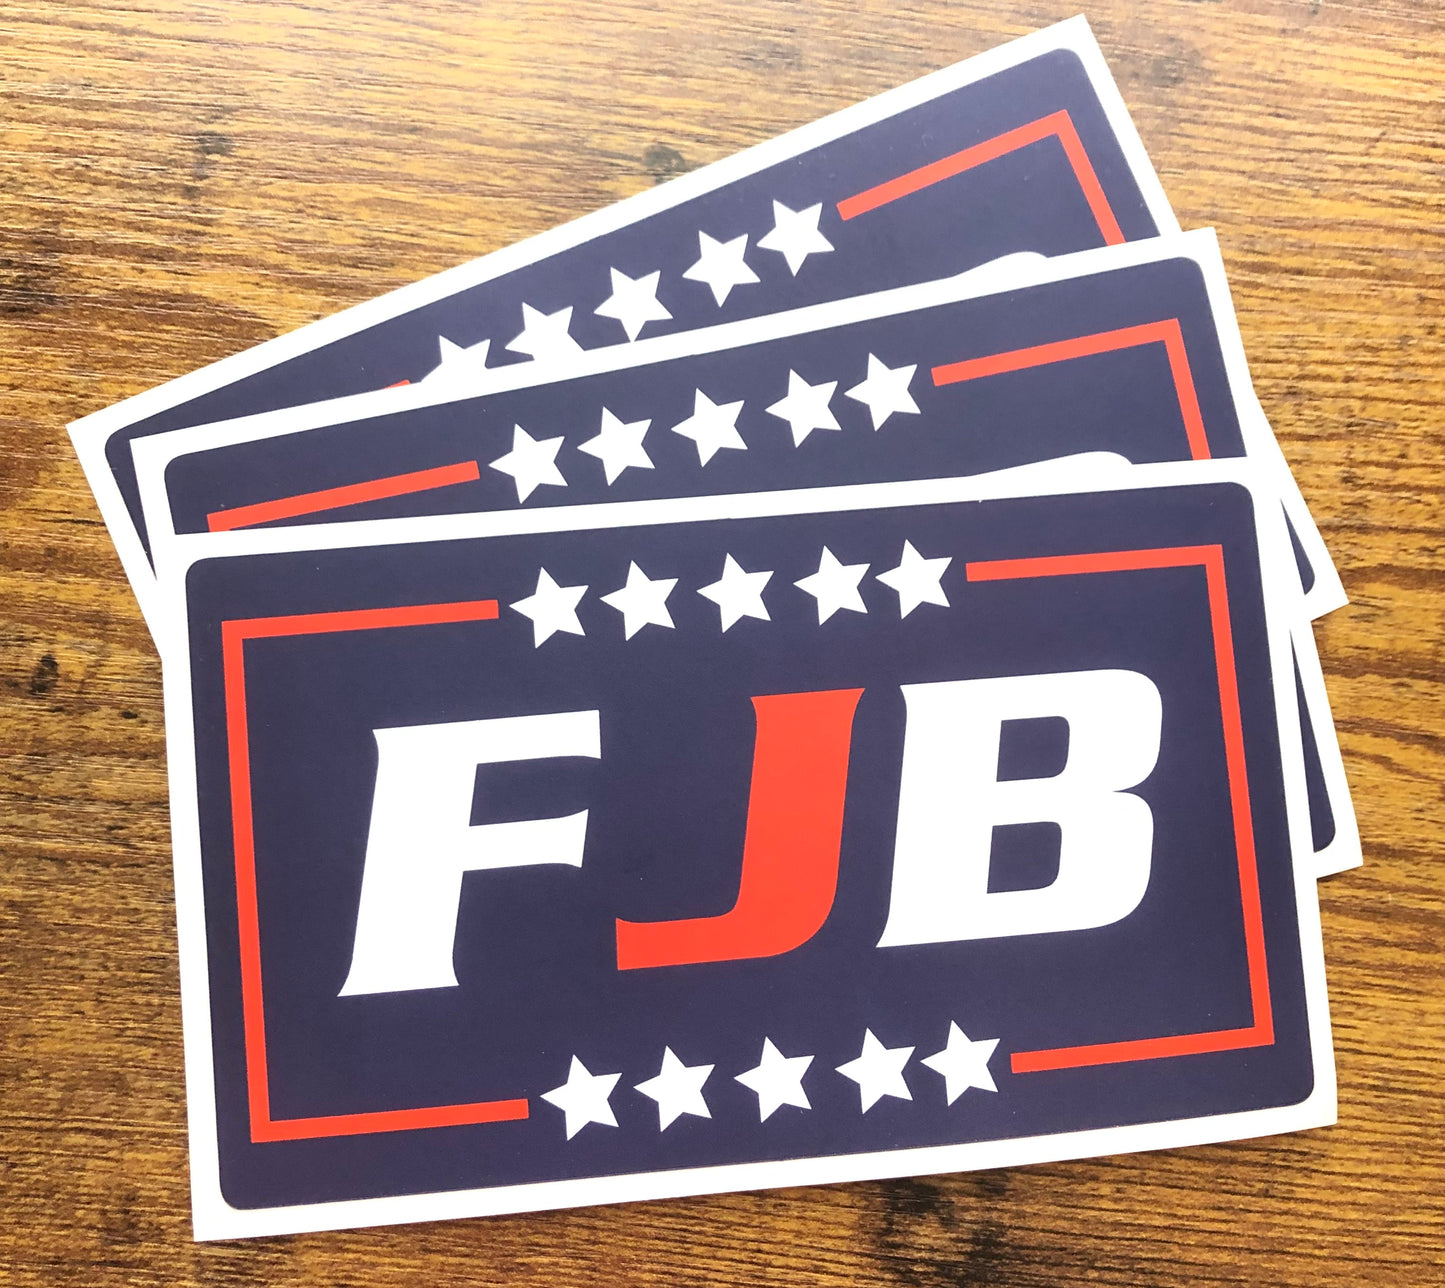 “FJB” Bumper Stickers